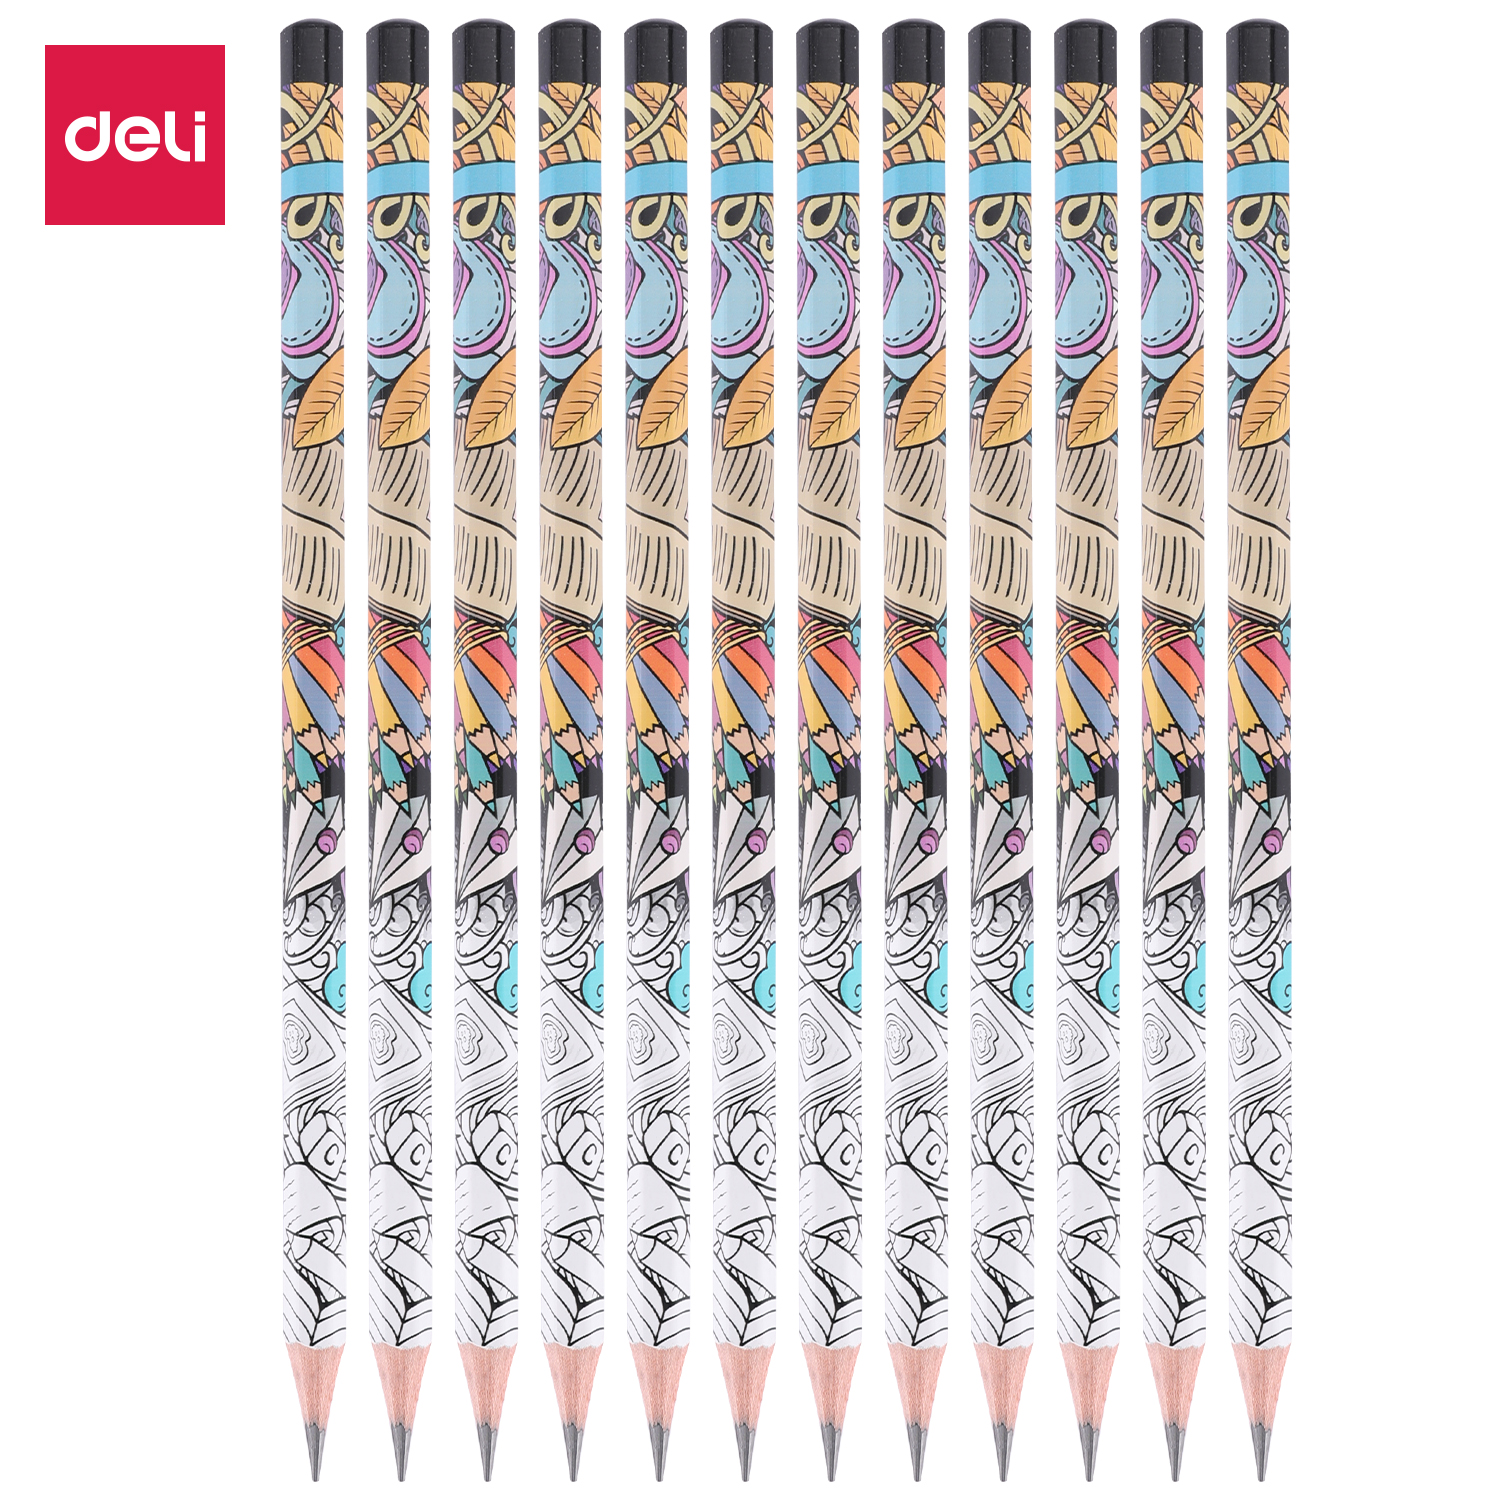 Deli-EU53300 Graphite Pencil